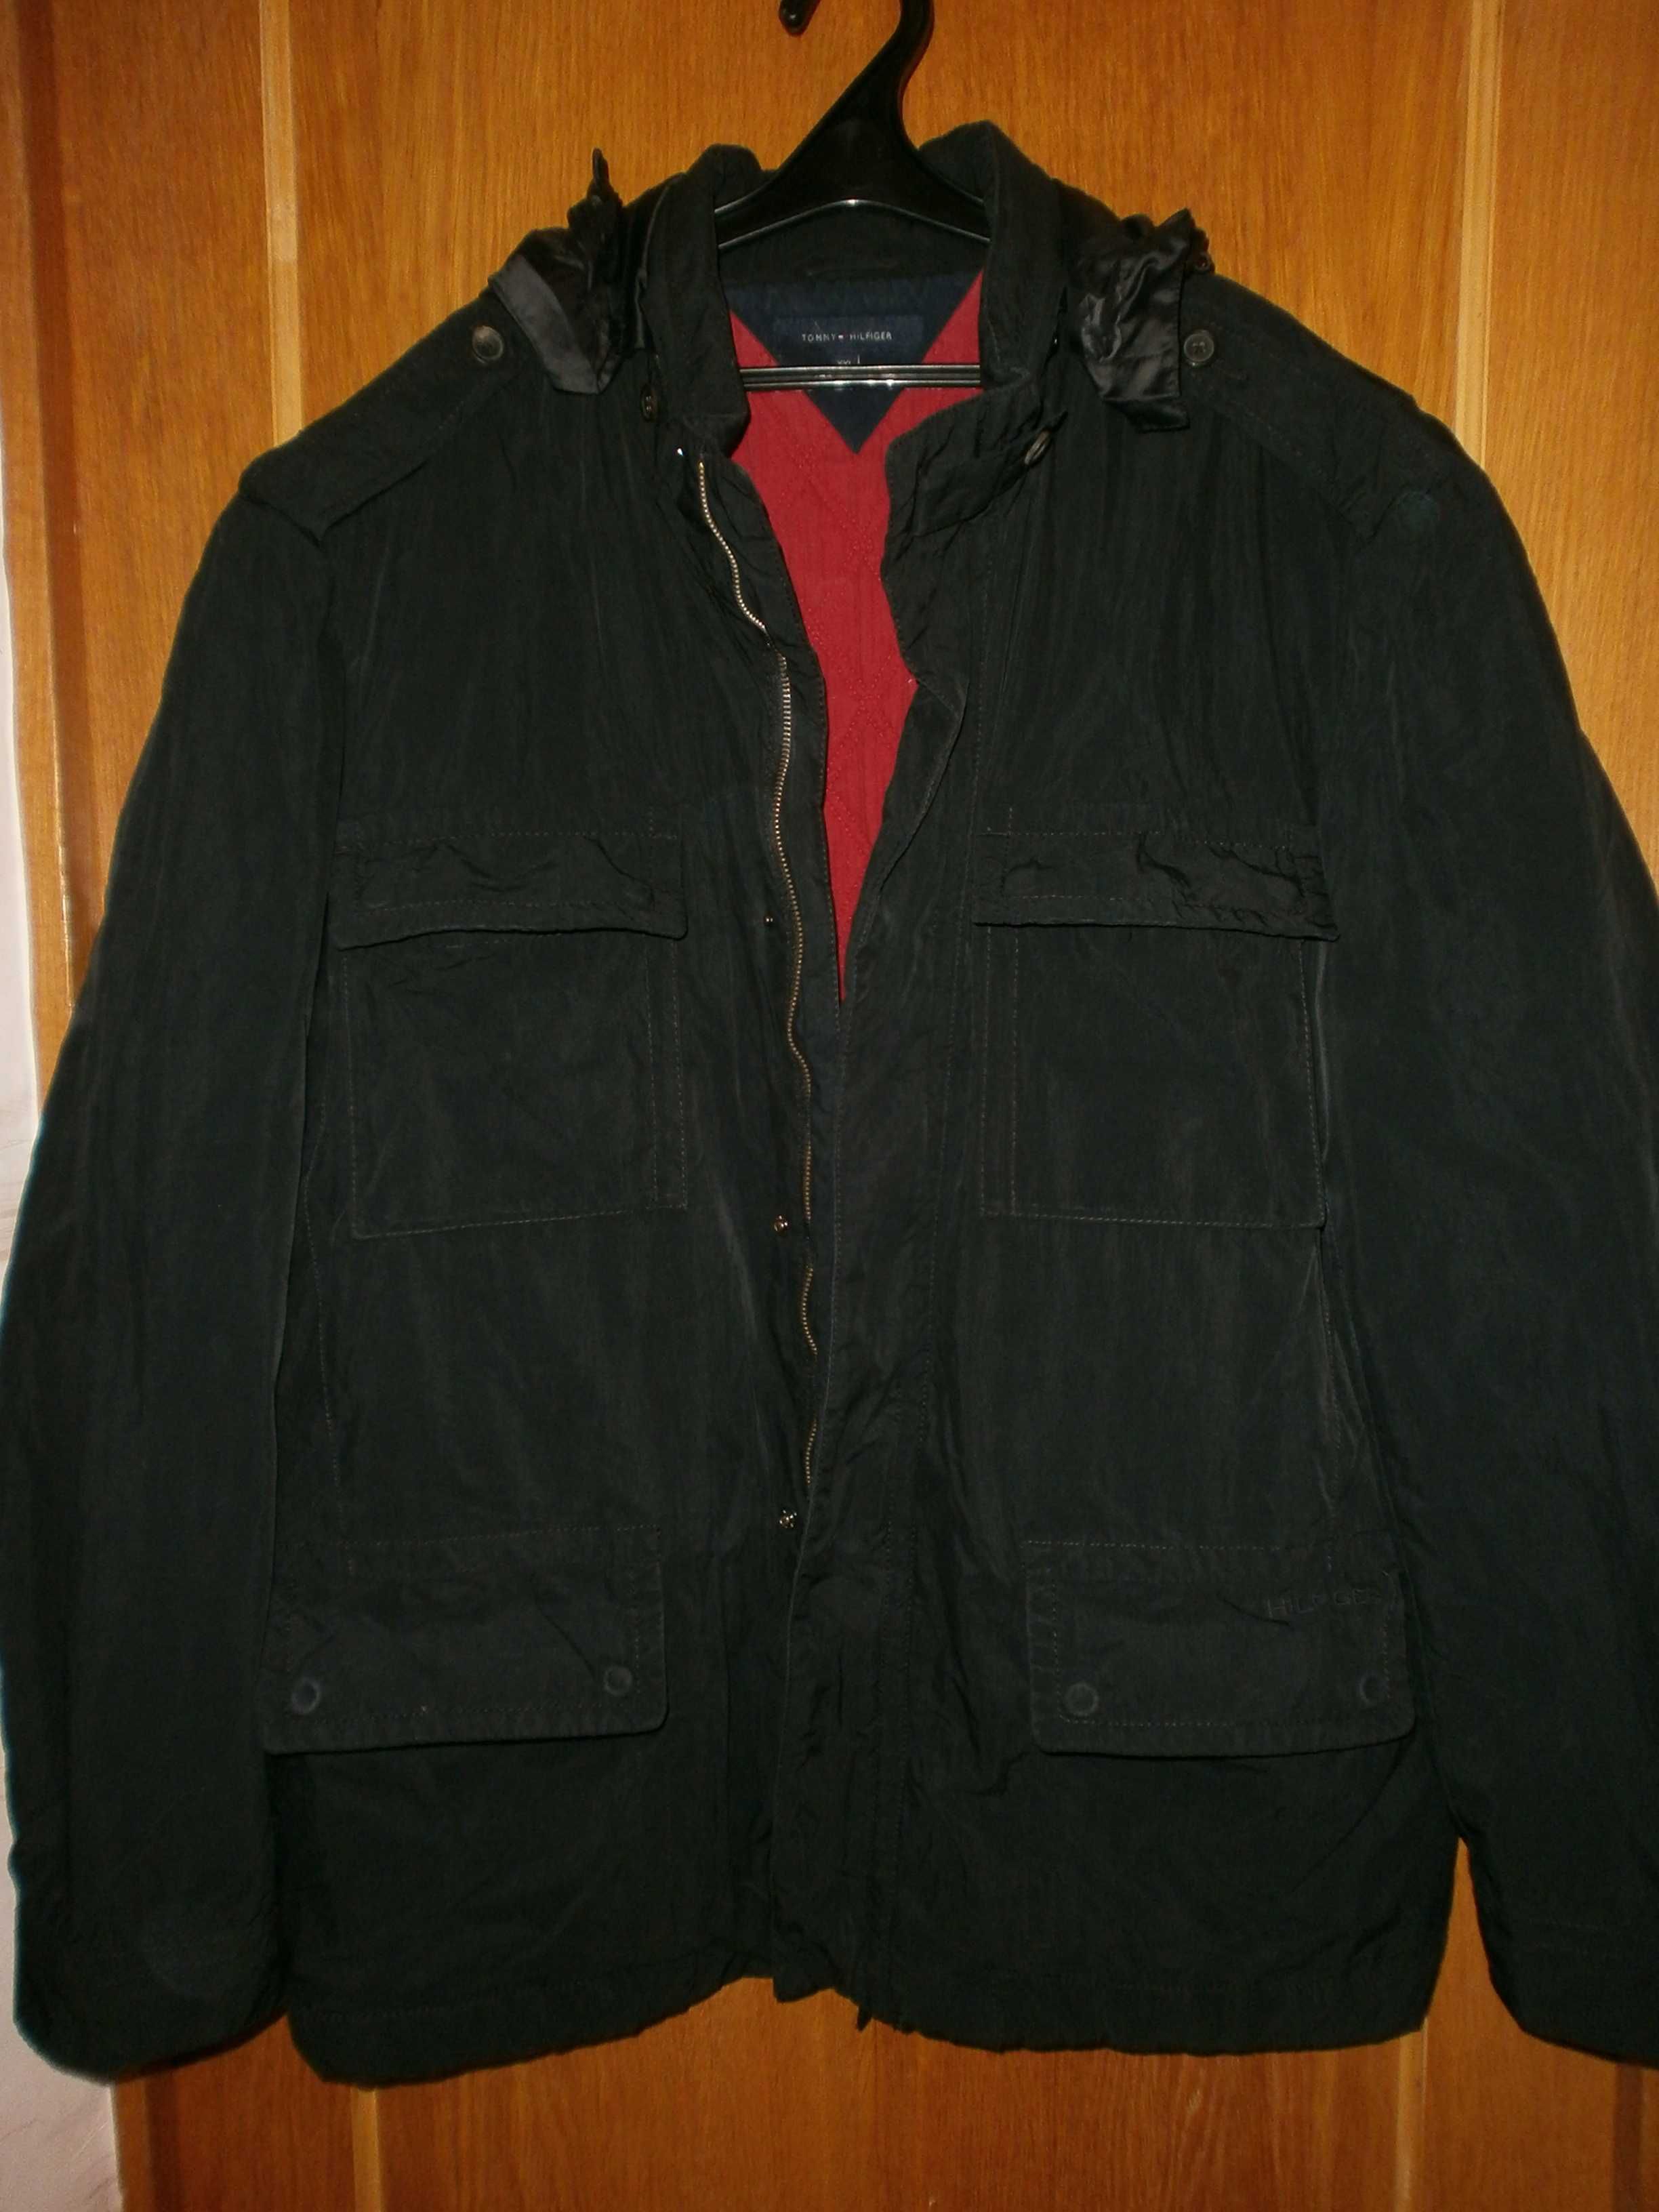 Куртка тип М65 Tommy Hilfiger, разм. XXL, наш 56. ПОГ-67 см. Демисезон